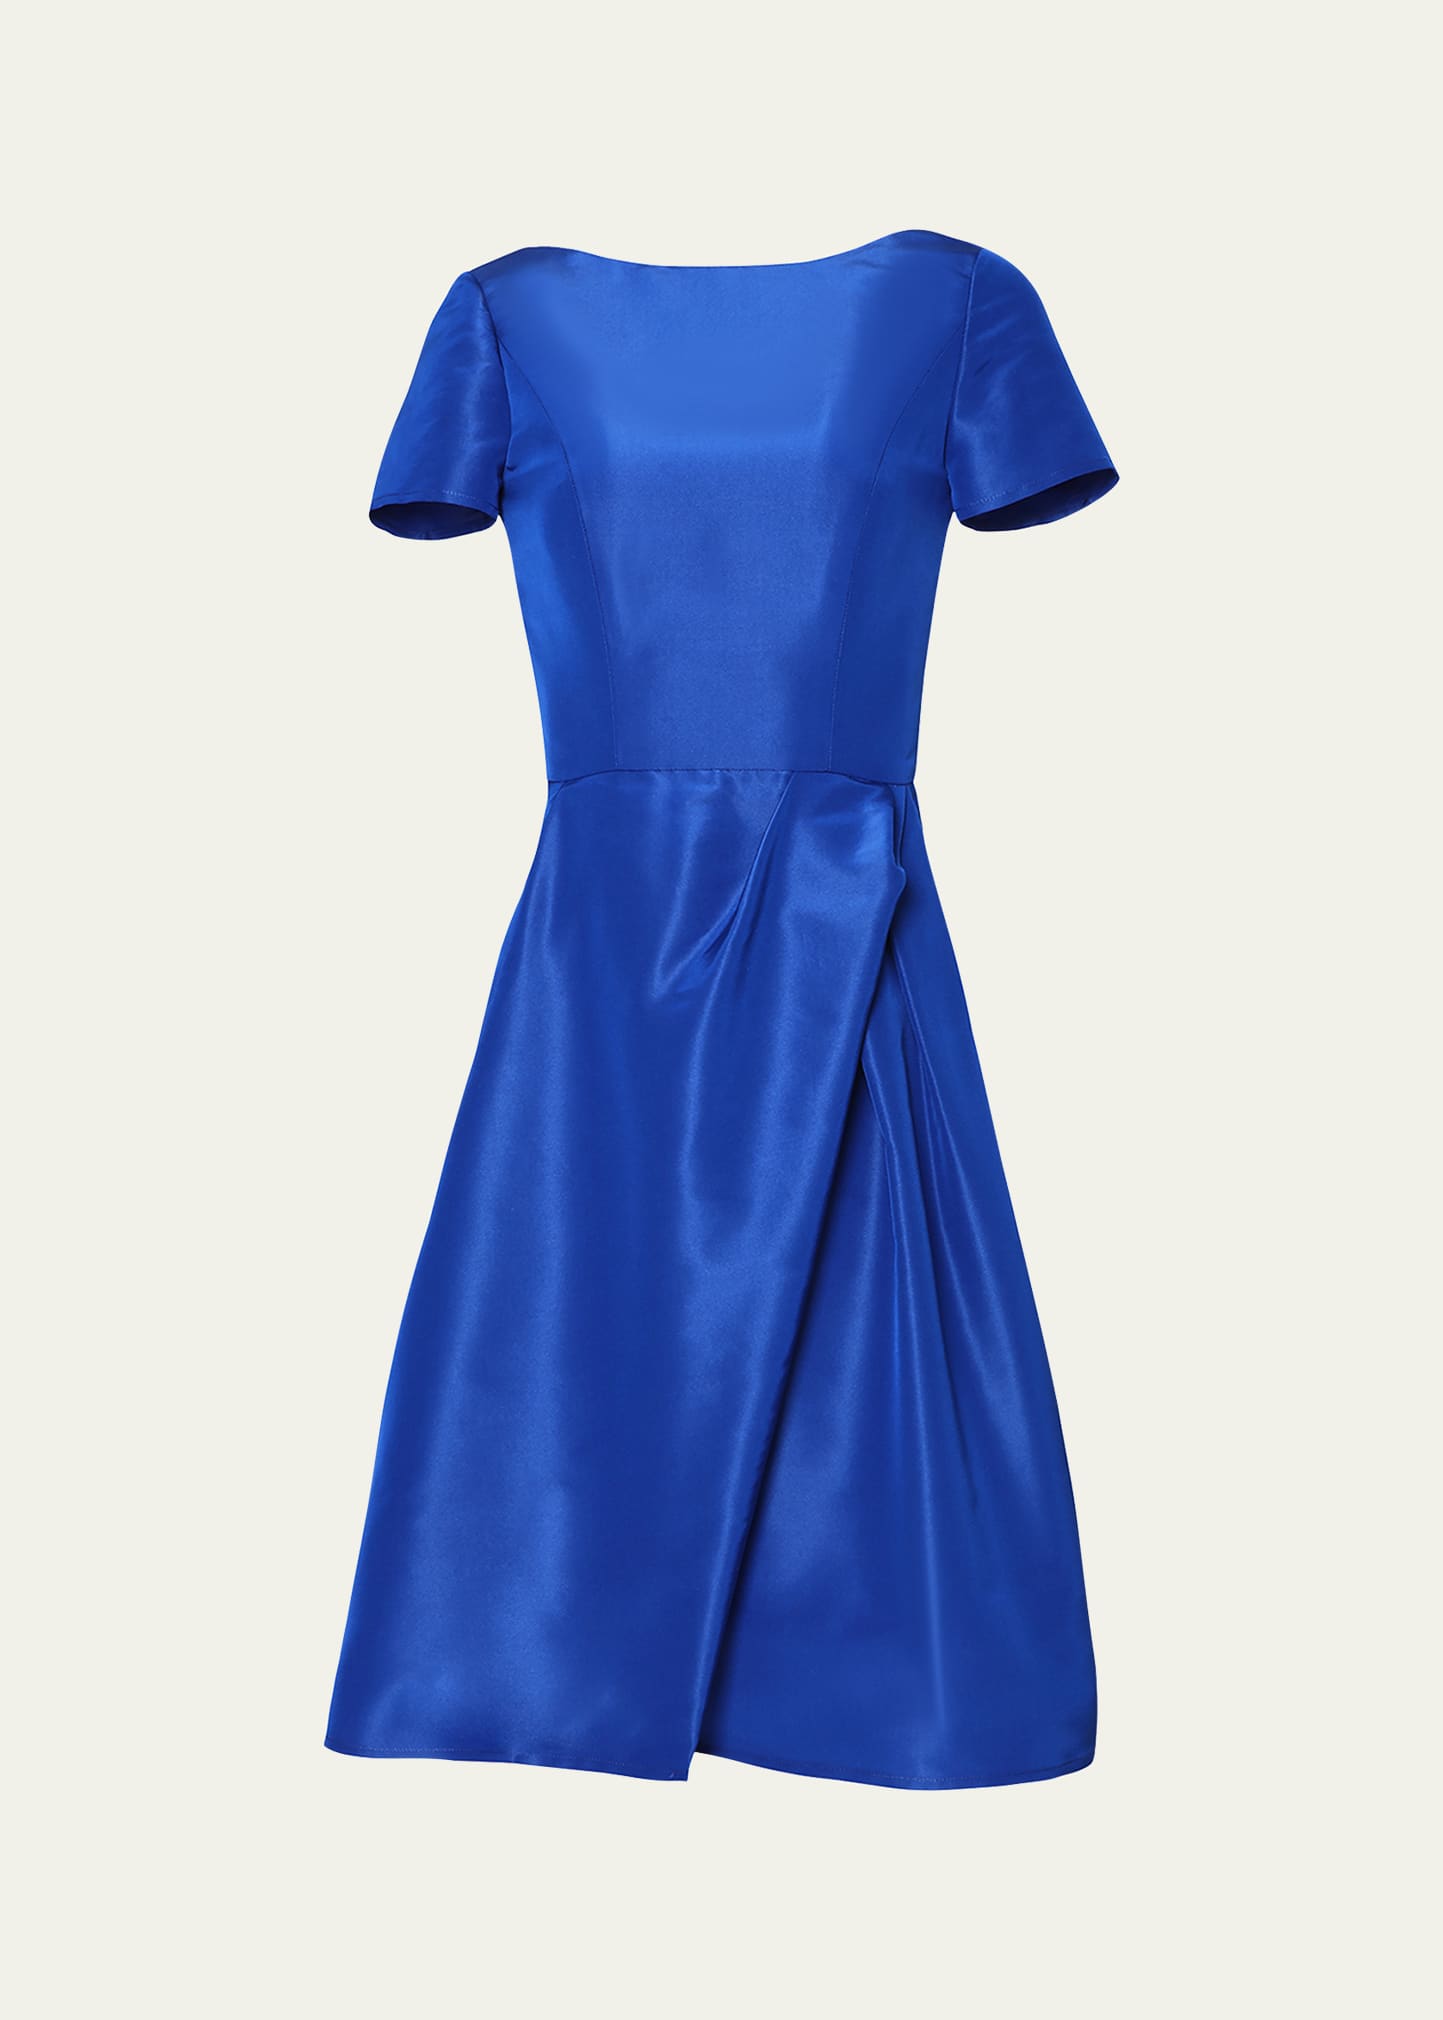 Icon Bateau Neck Short-Sleeve Dress